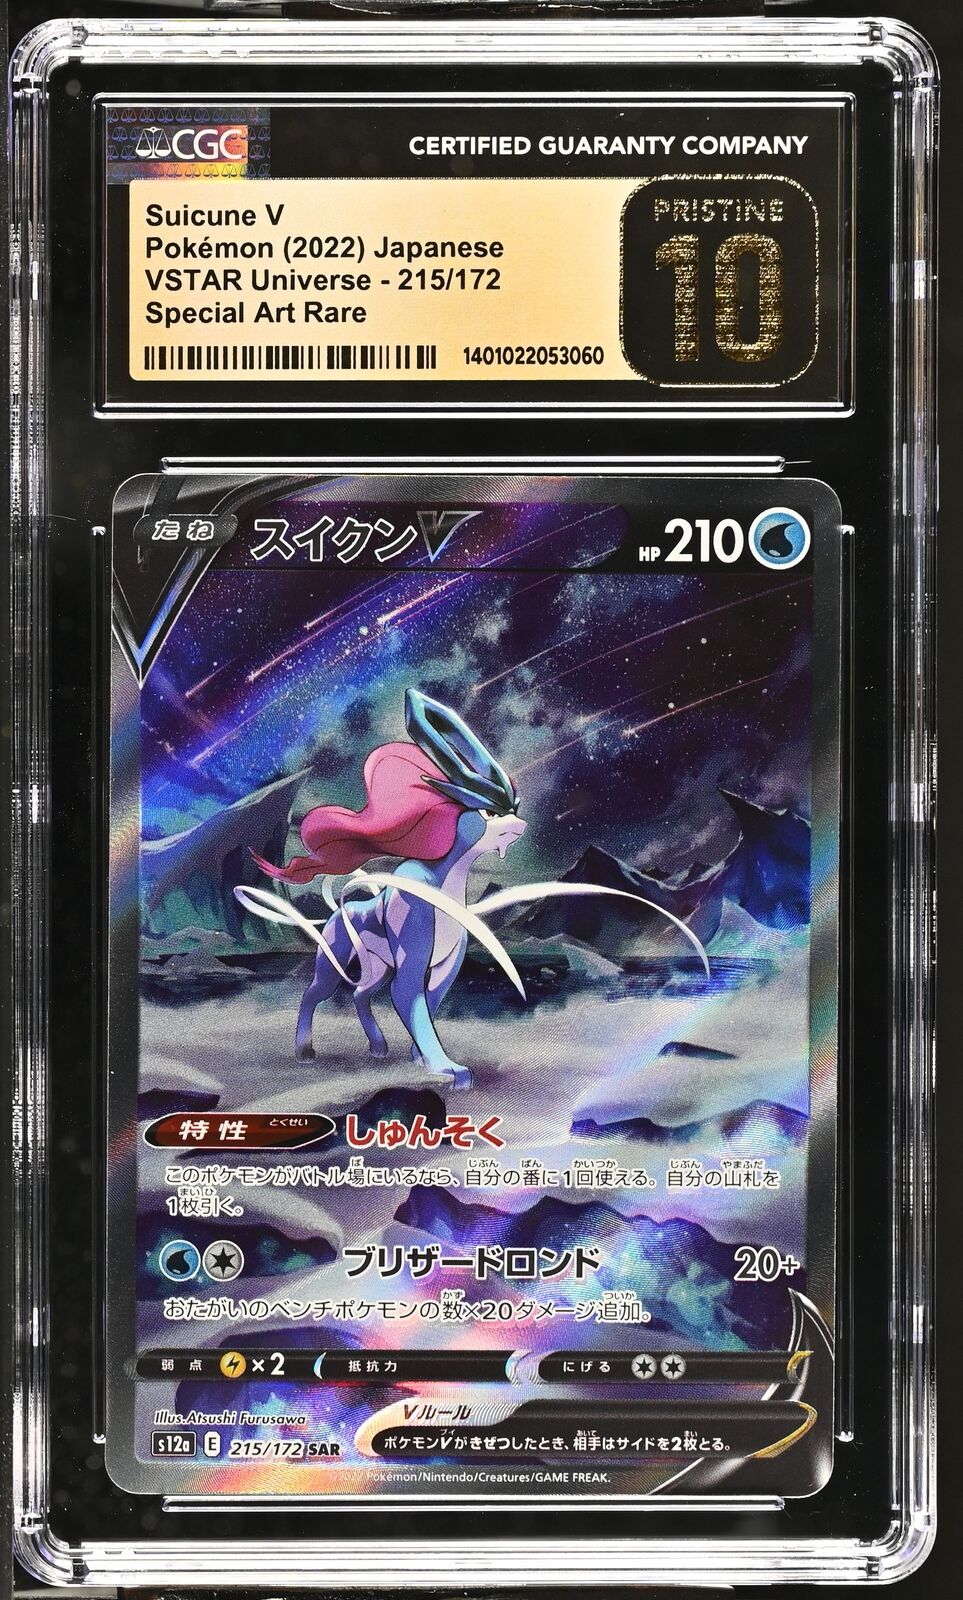 CGC 10 PRISTINE Japanese Pokémon 2022 Suicune V 215/172 S12a Special Art Rare